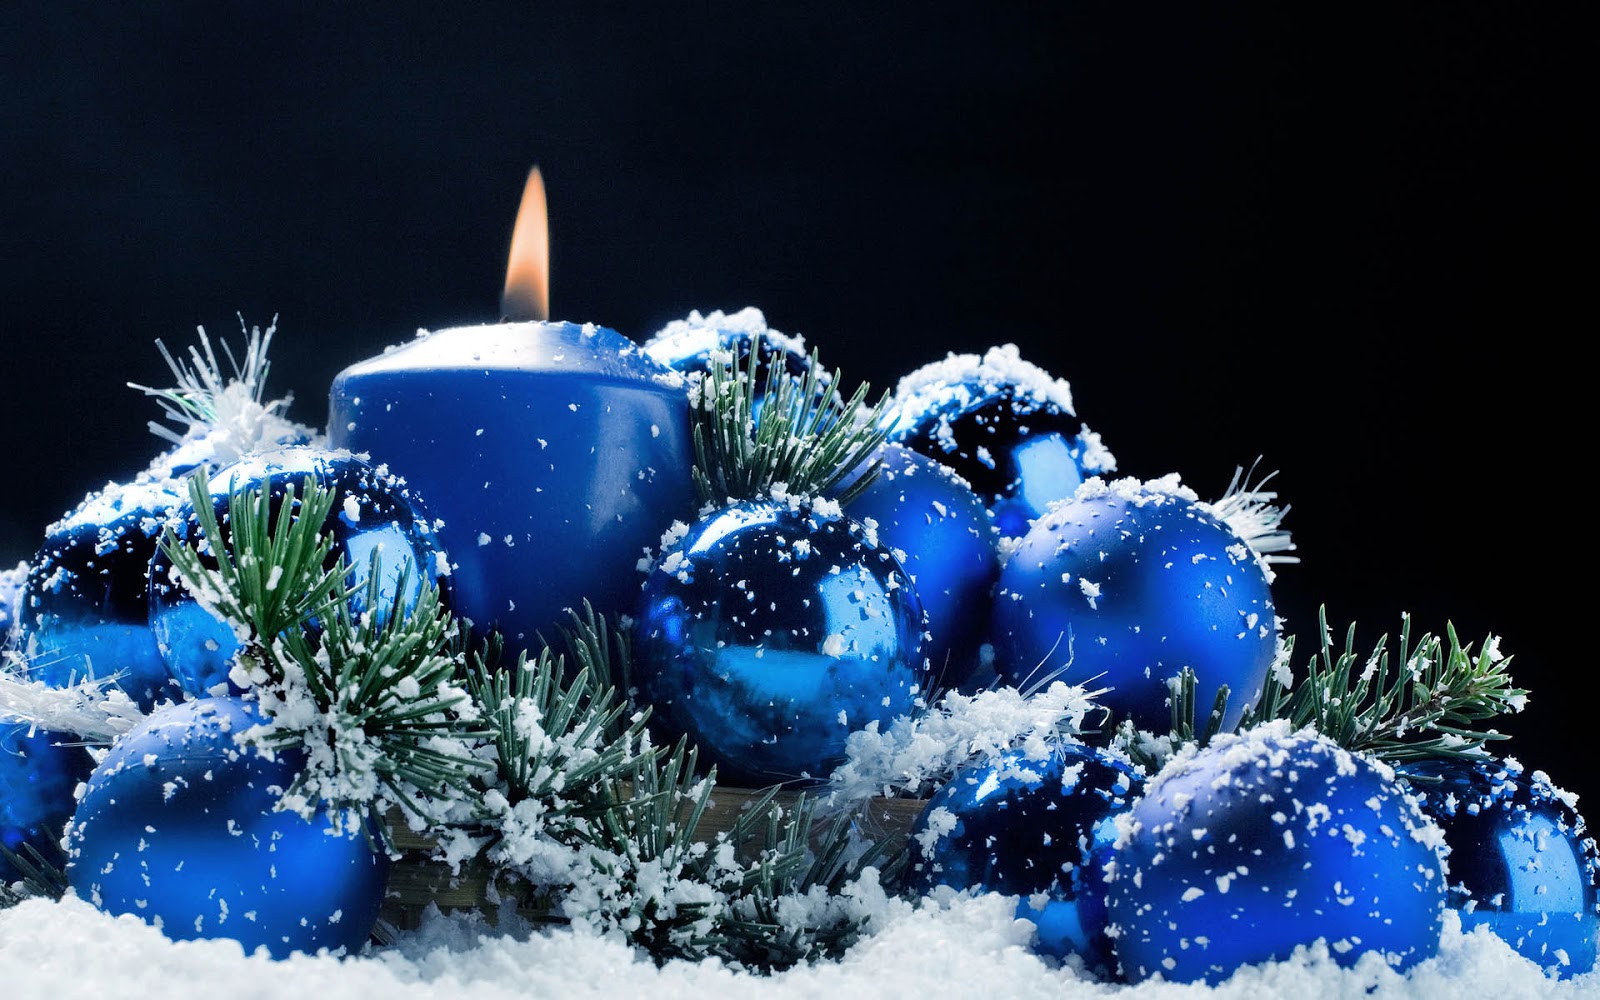 http://2.bp.blogspot.com/-ciuXjCSdtnc/UIrUB1M1ueI/AAAAAAAAH9c/tCaVcZkgUEg/s1600/kerst-wallpaper-met-blauwe-kerstballen-en-een-brandende-kaars.jpg